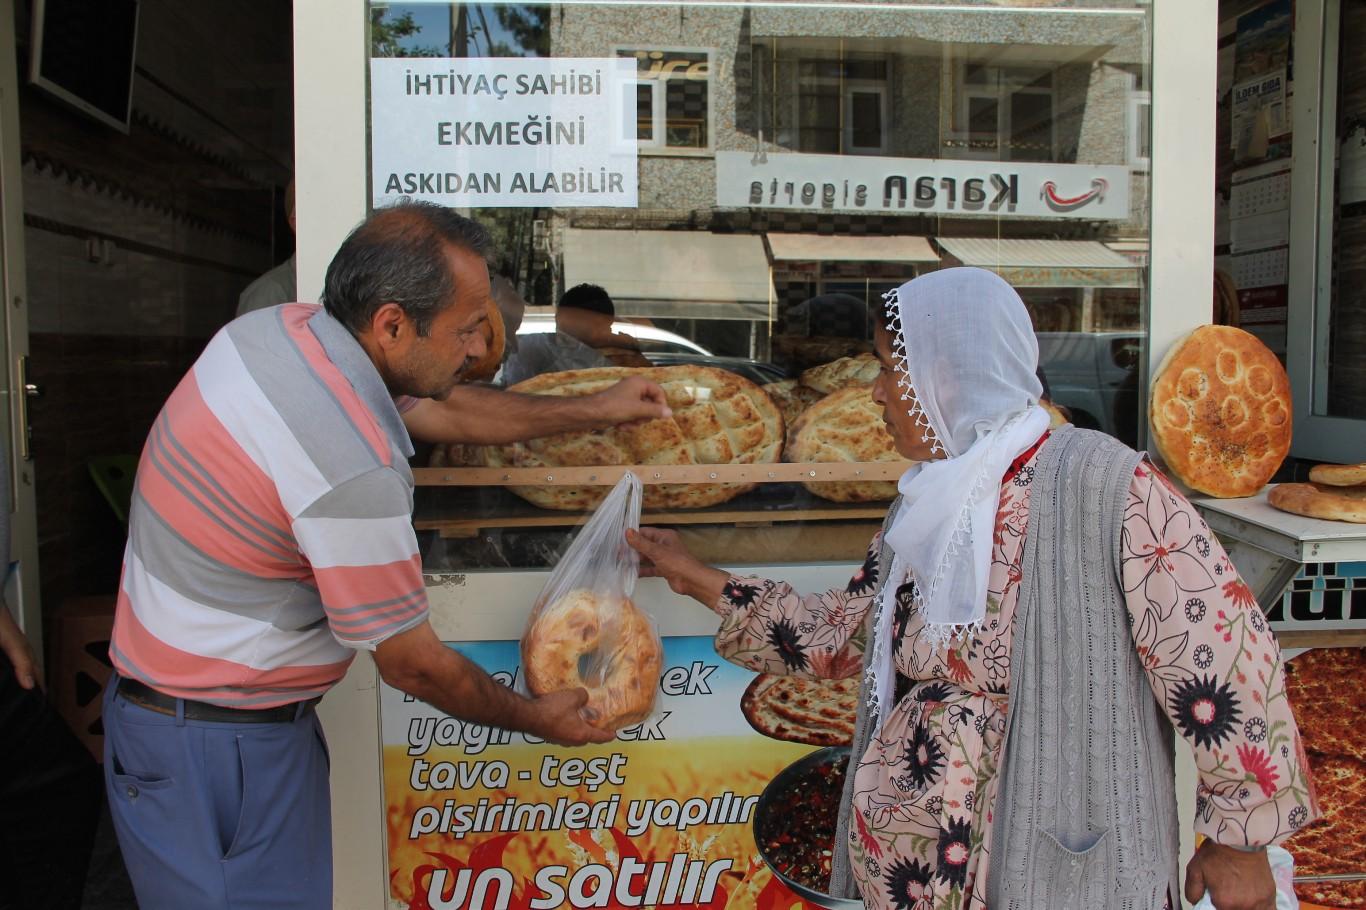 Kızıltepe’de ‘Askıda Ekmek’ uygulaması başlatıldı